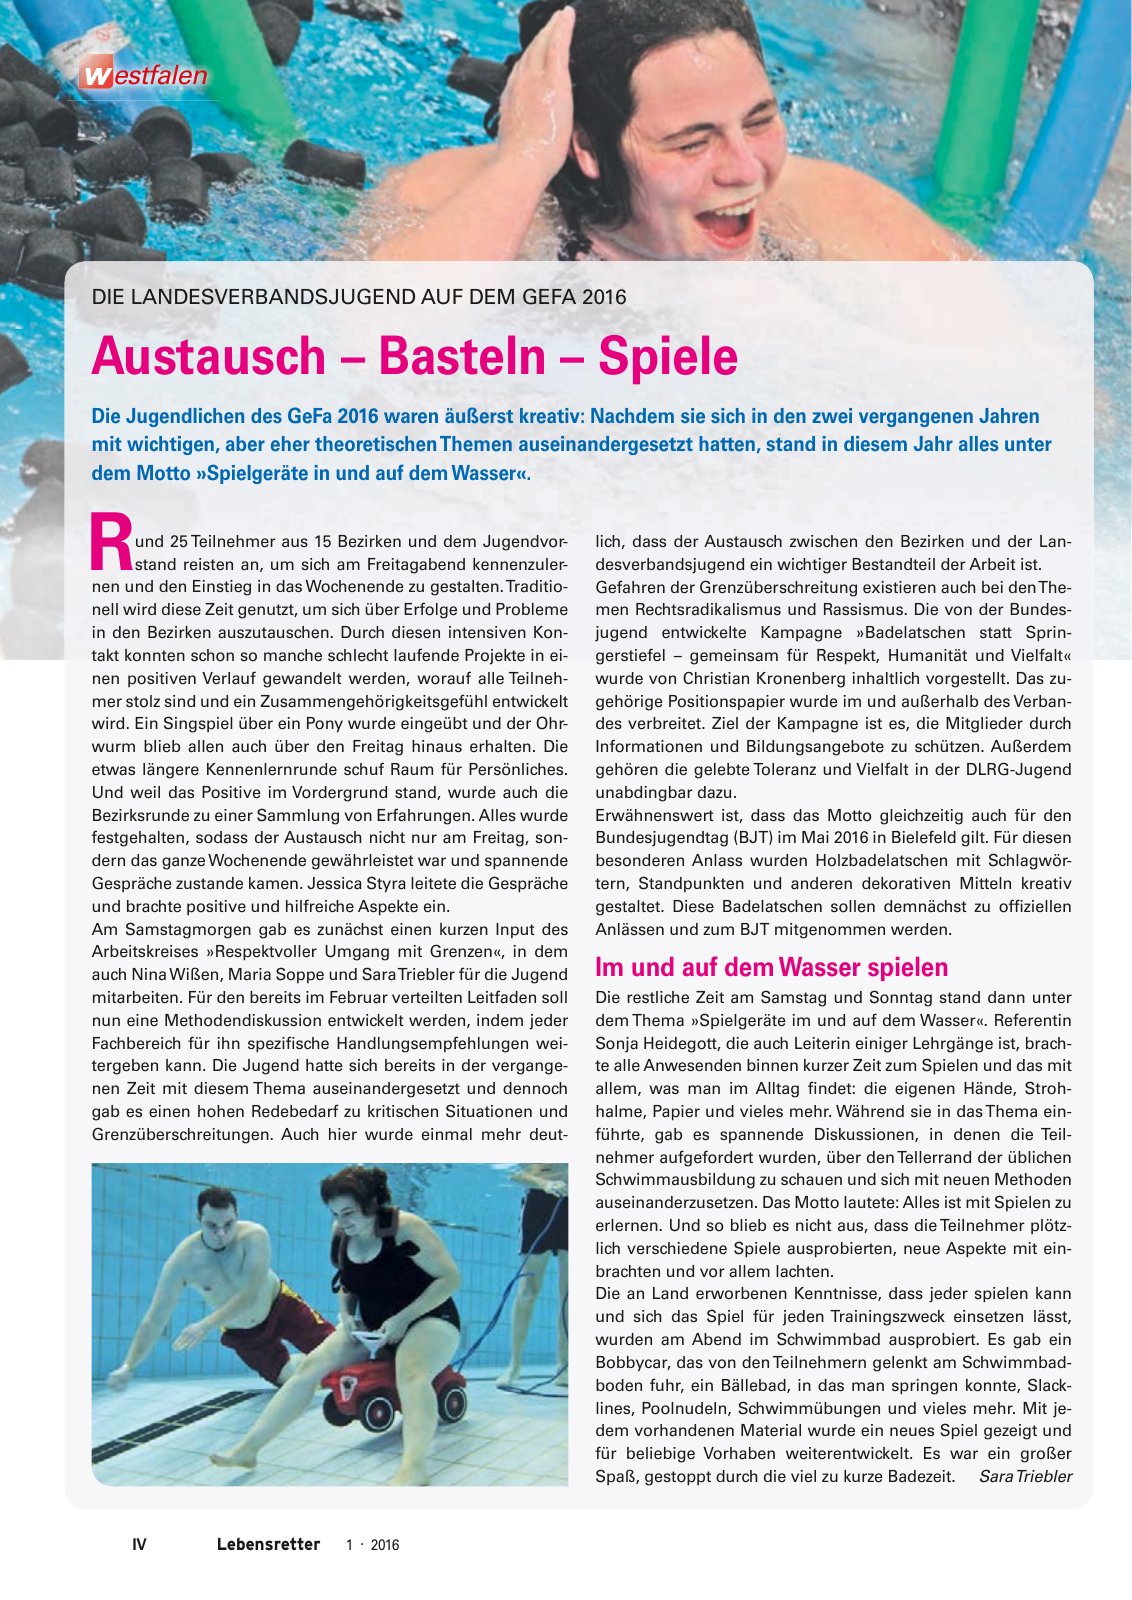 Vorschau Lebensretter 1/2016 - Regionalausgabe Westfalen Seite 6